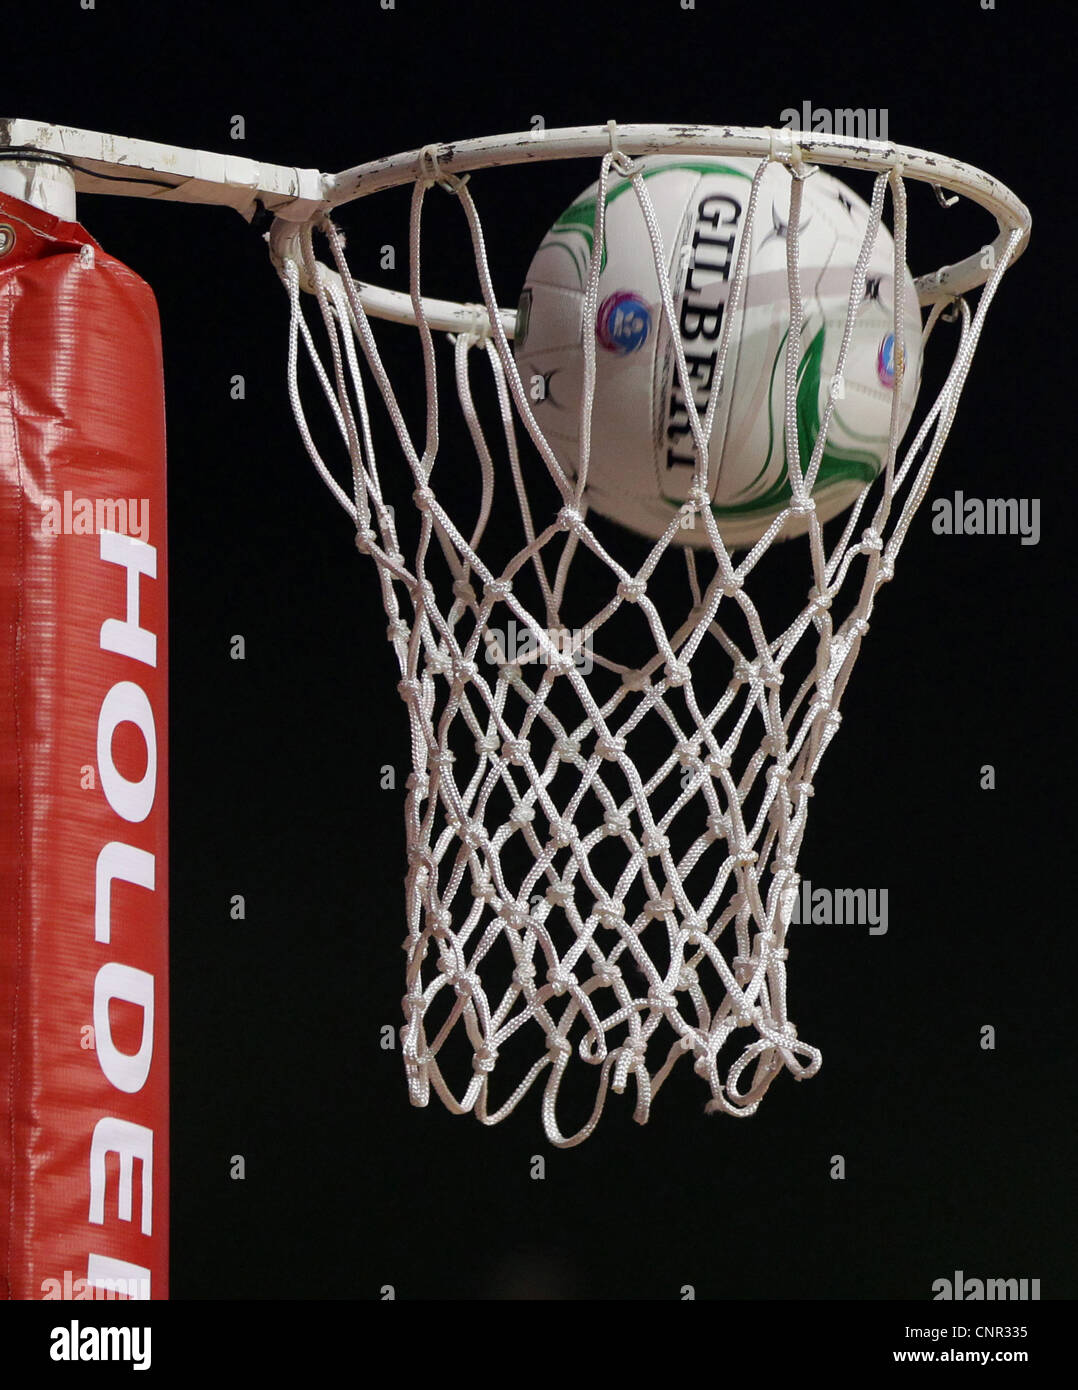 Aro de baloncesto, Auckland, Nueva Zelanda, el Domingo, Abril 01, 2012. Foto de stock